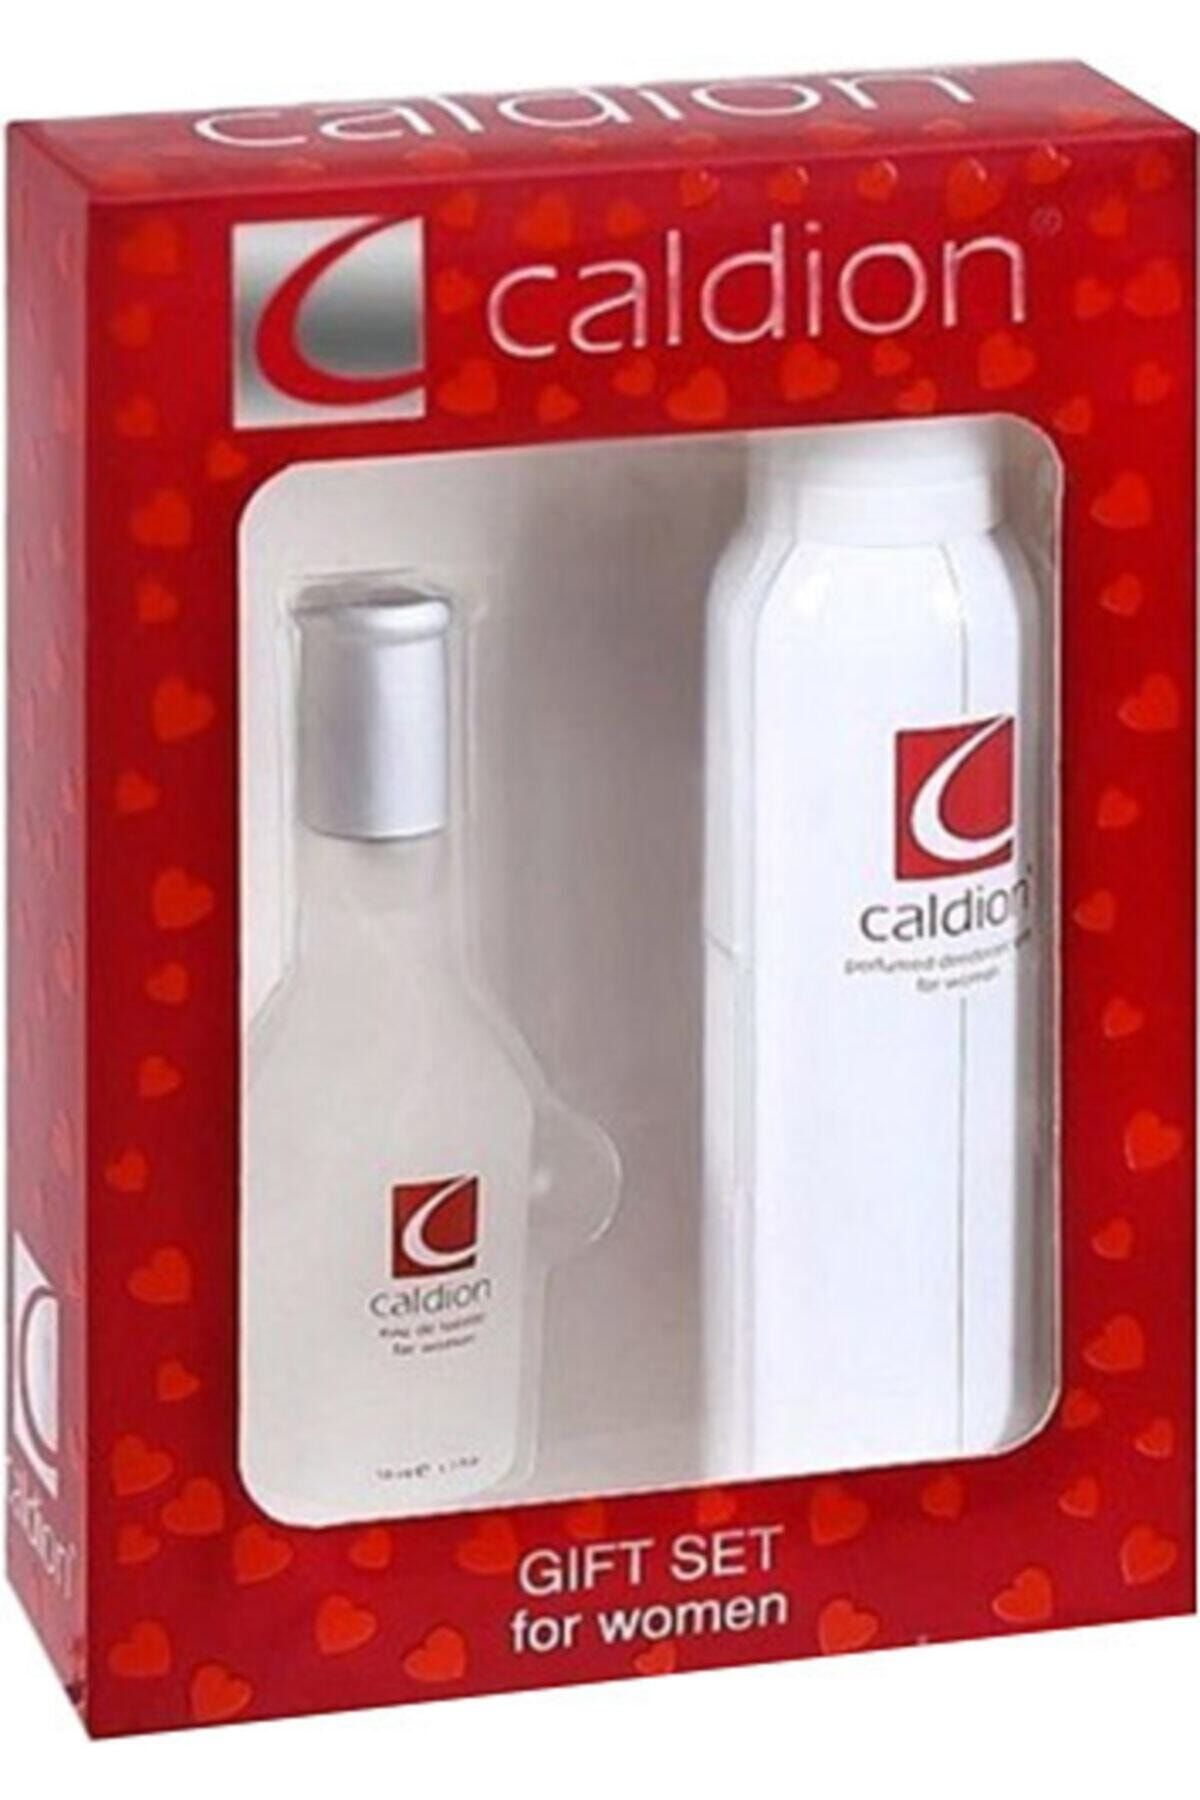 Caldion Classic 50 Ml Edt + 150 Ml Deodorant Set